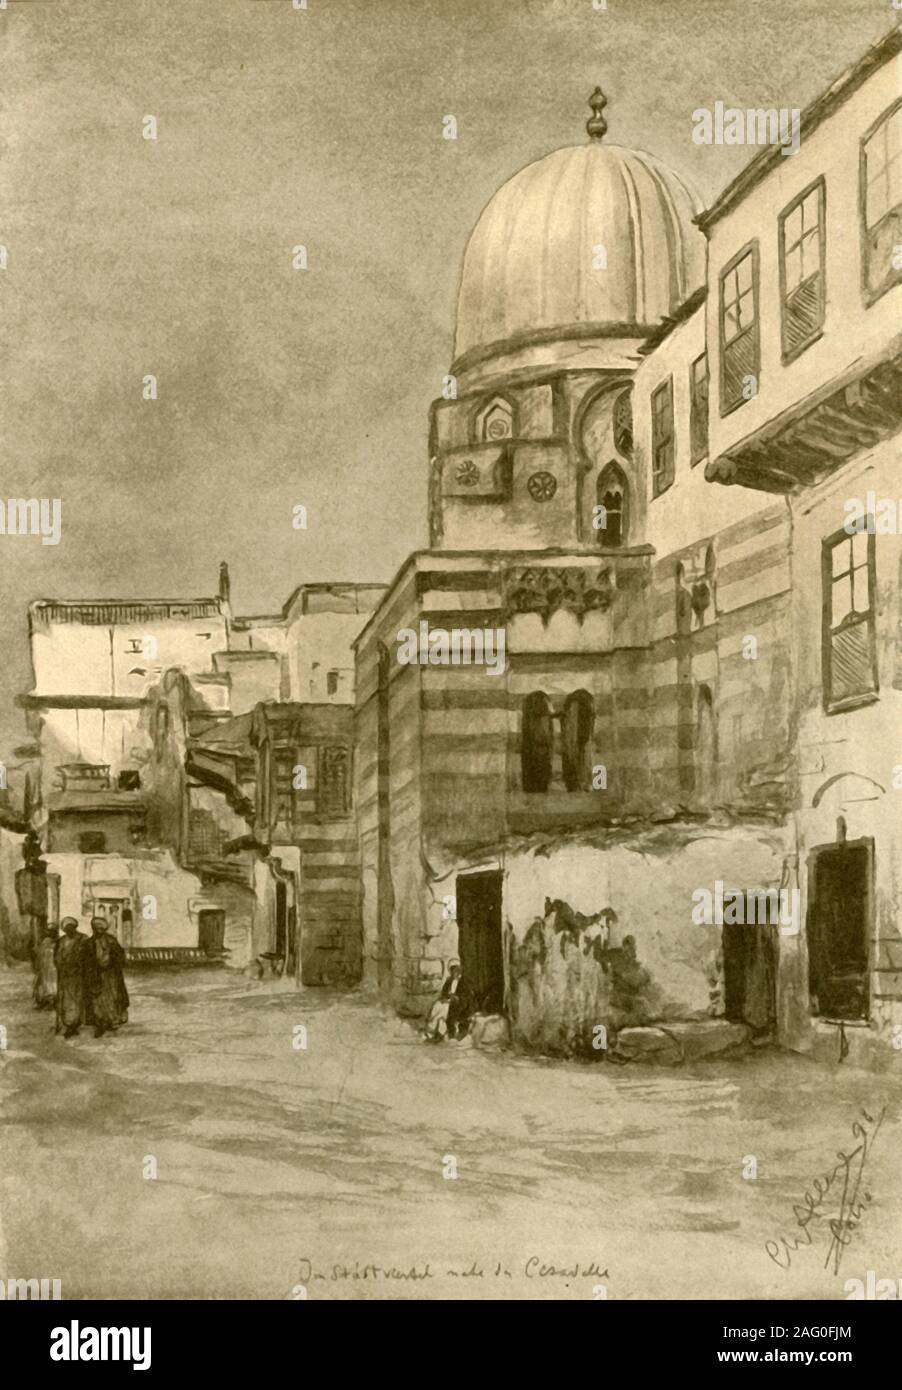 Mosquée, Le Caire, Egypte, 1898. À partir de "Rund um die Erde" [le Tour de la terre], écrit et illustré par C. W. Allers. [Union Deutsche Verlagsgesellschaft, Stuttgart, 1898] Banque D'Images